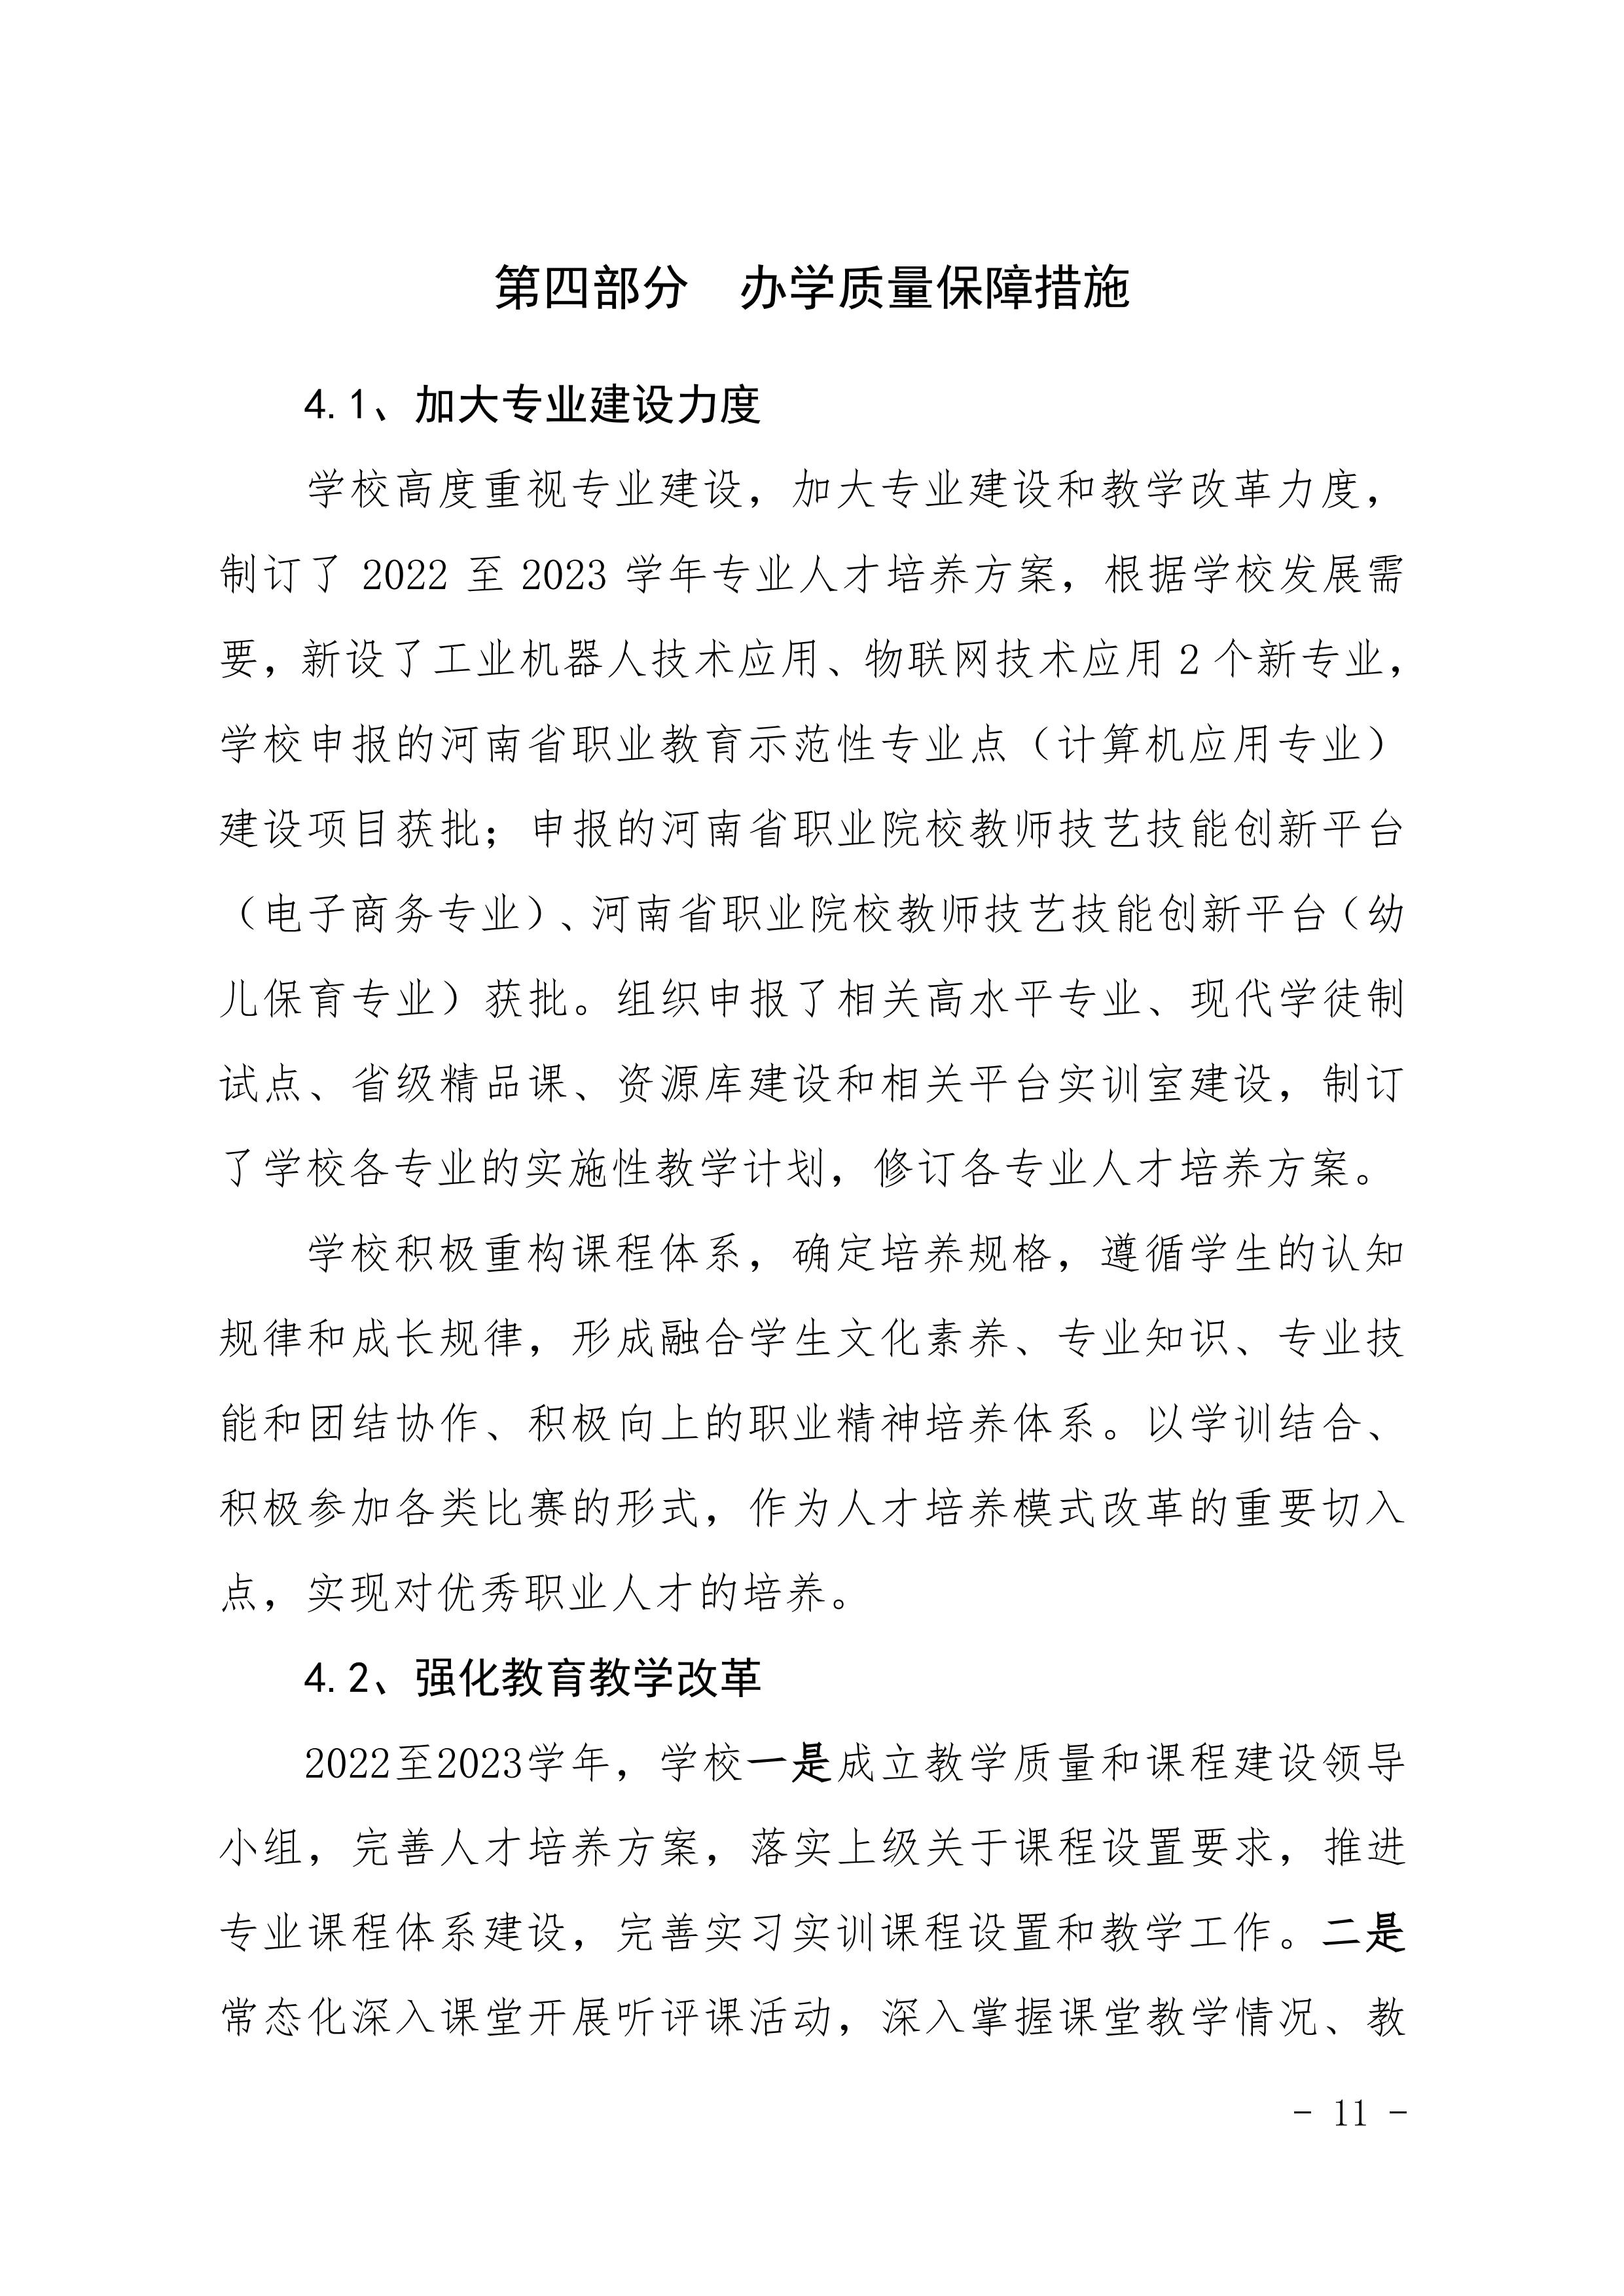 河南省民政学校职业教育质量报告（2023年度）发布版_14.jpg